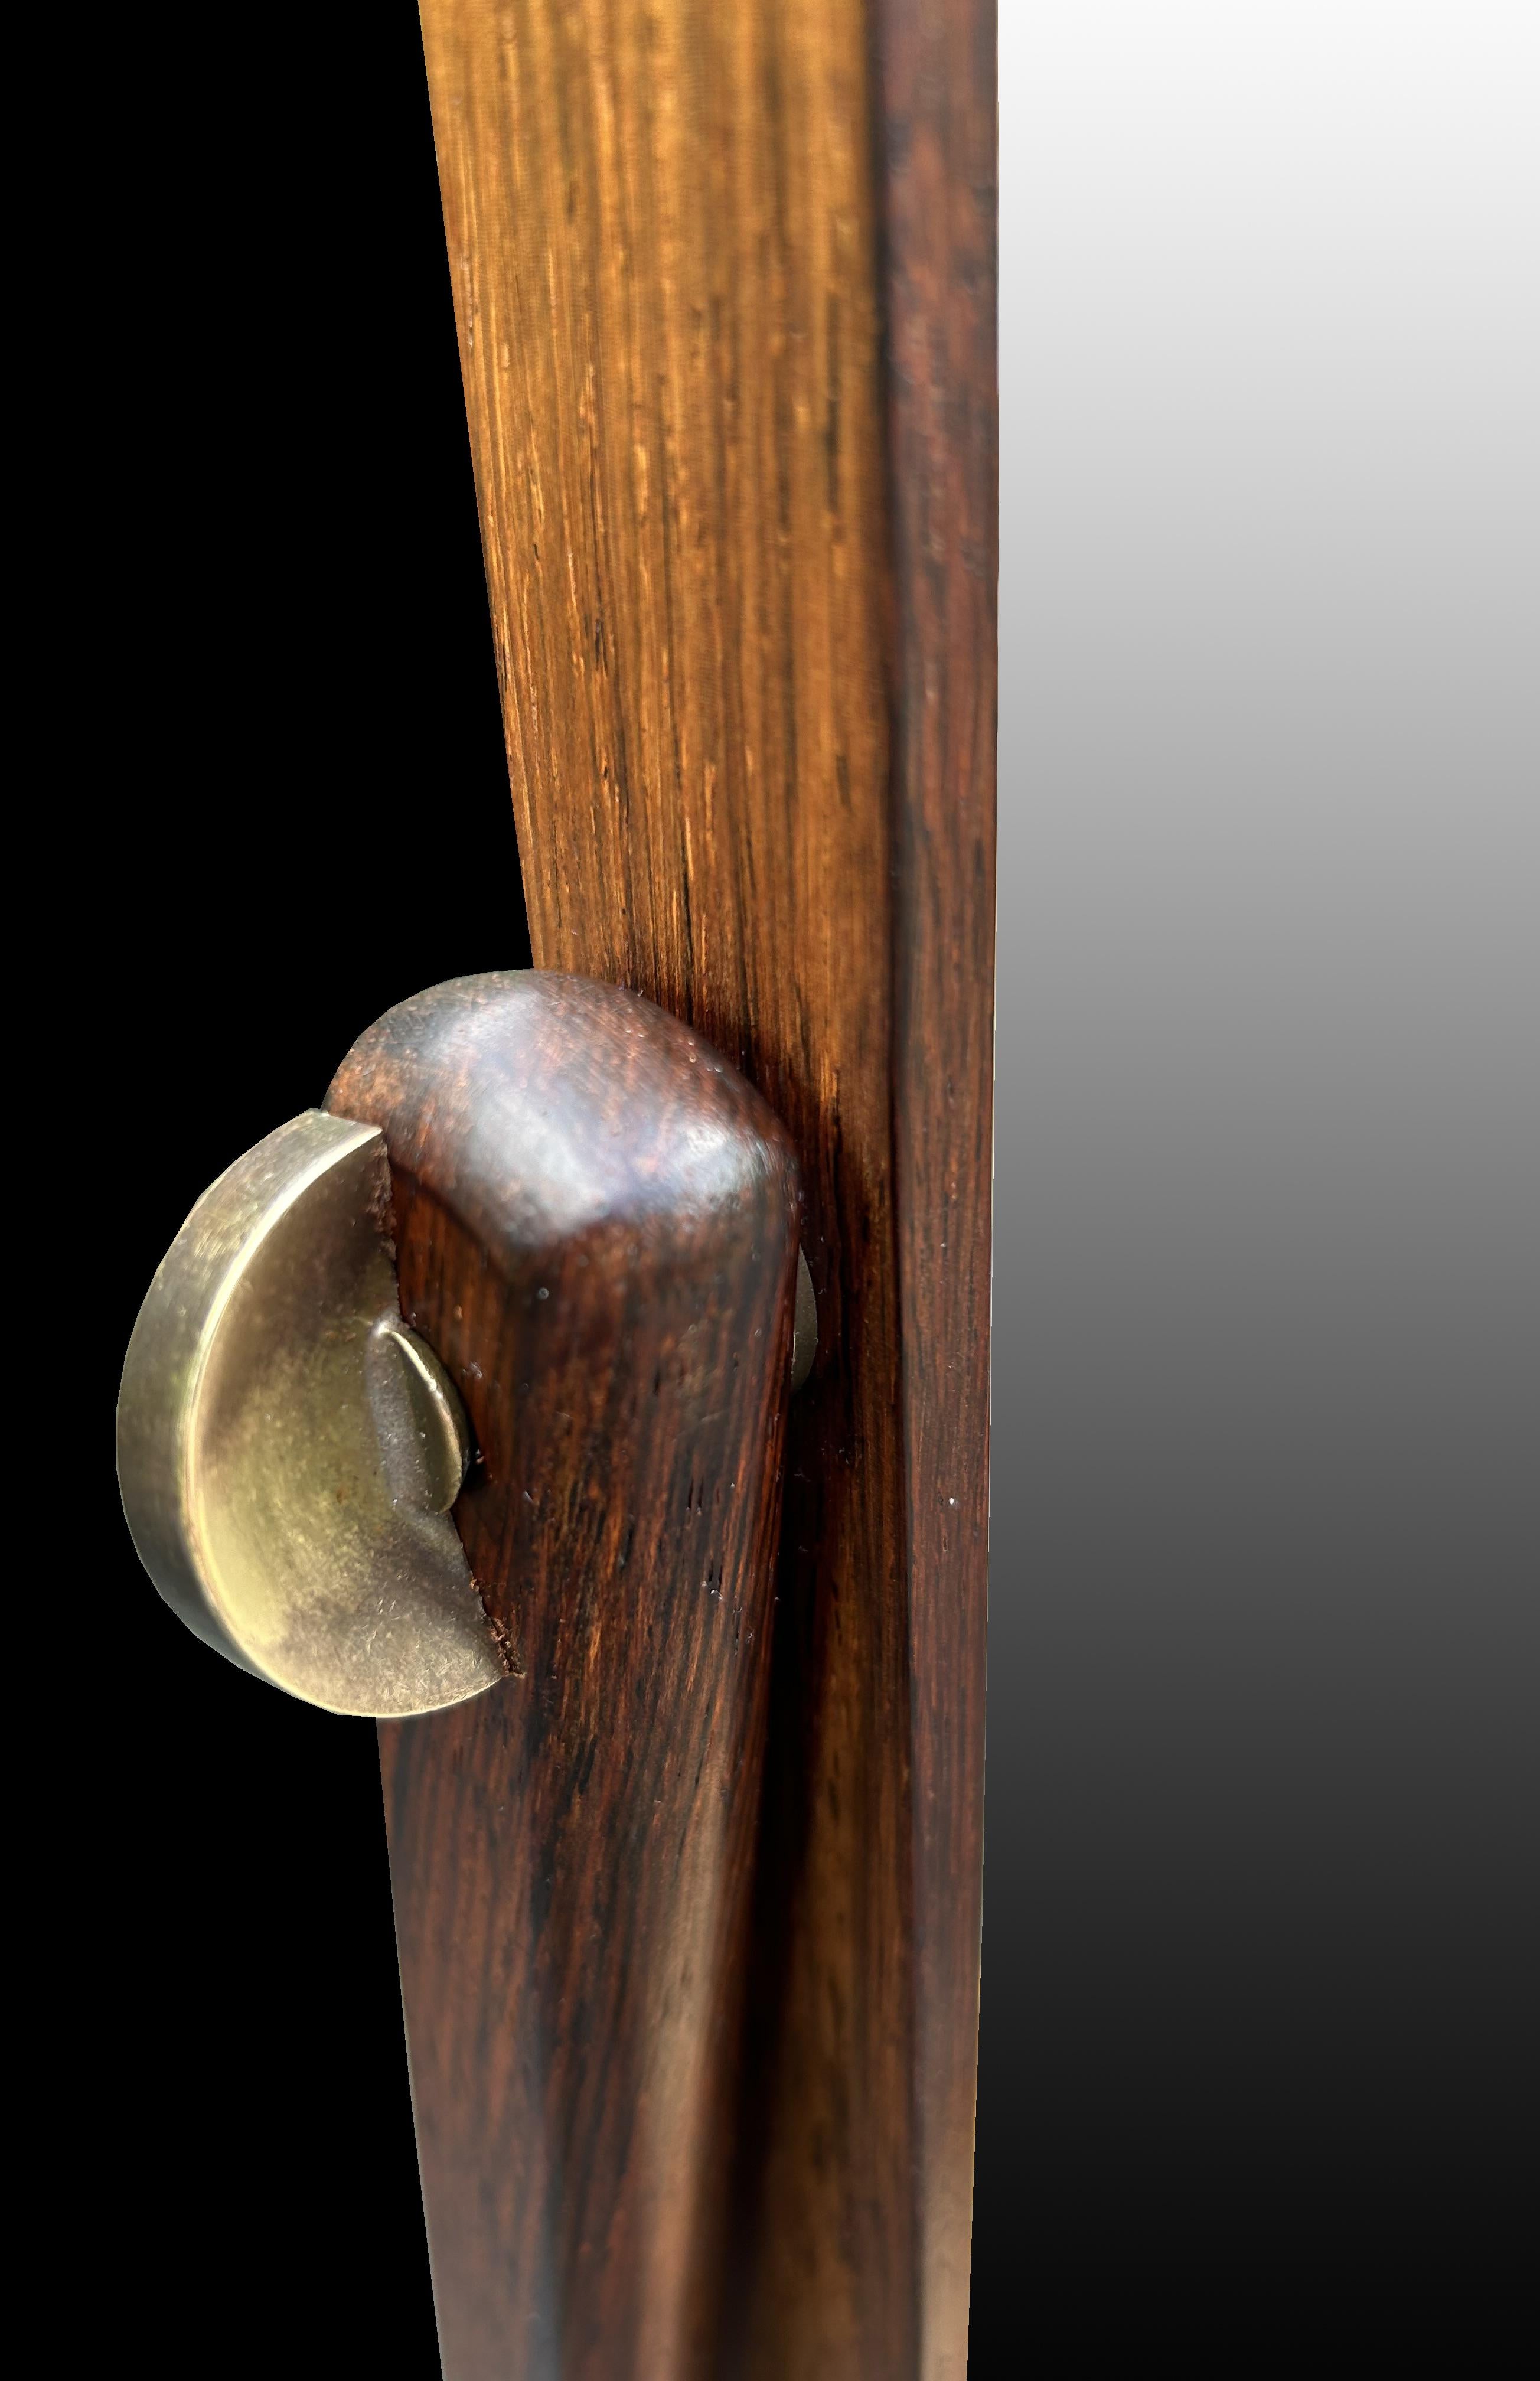 Dies ist ein schönes Beispiel für die seltene Rosenholz-Version eines klassischen skandinavischen modernen Design Cheval Spiegel mit Schublade, in sehr gutem Zustand.
Das für dieses Stück verwendete Holz ist Santos Rosewood oder Machaerium